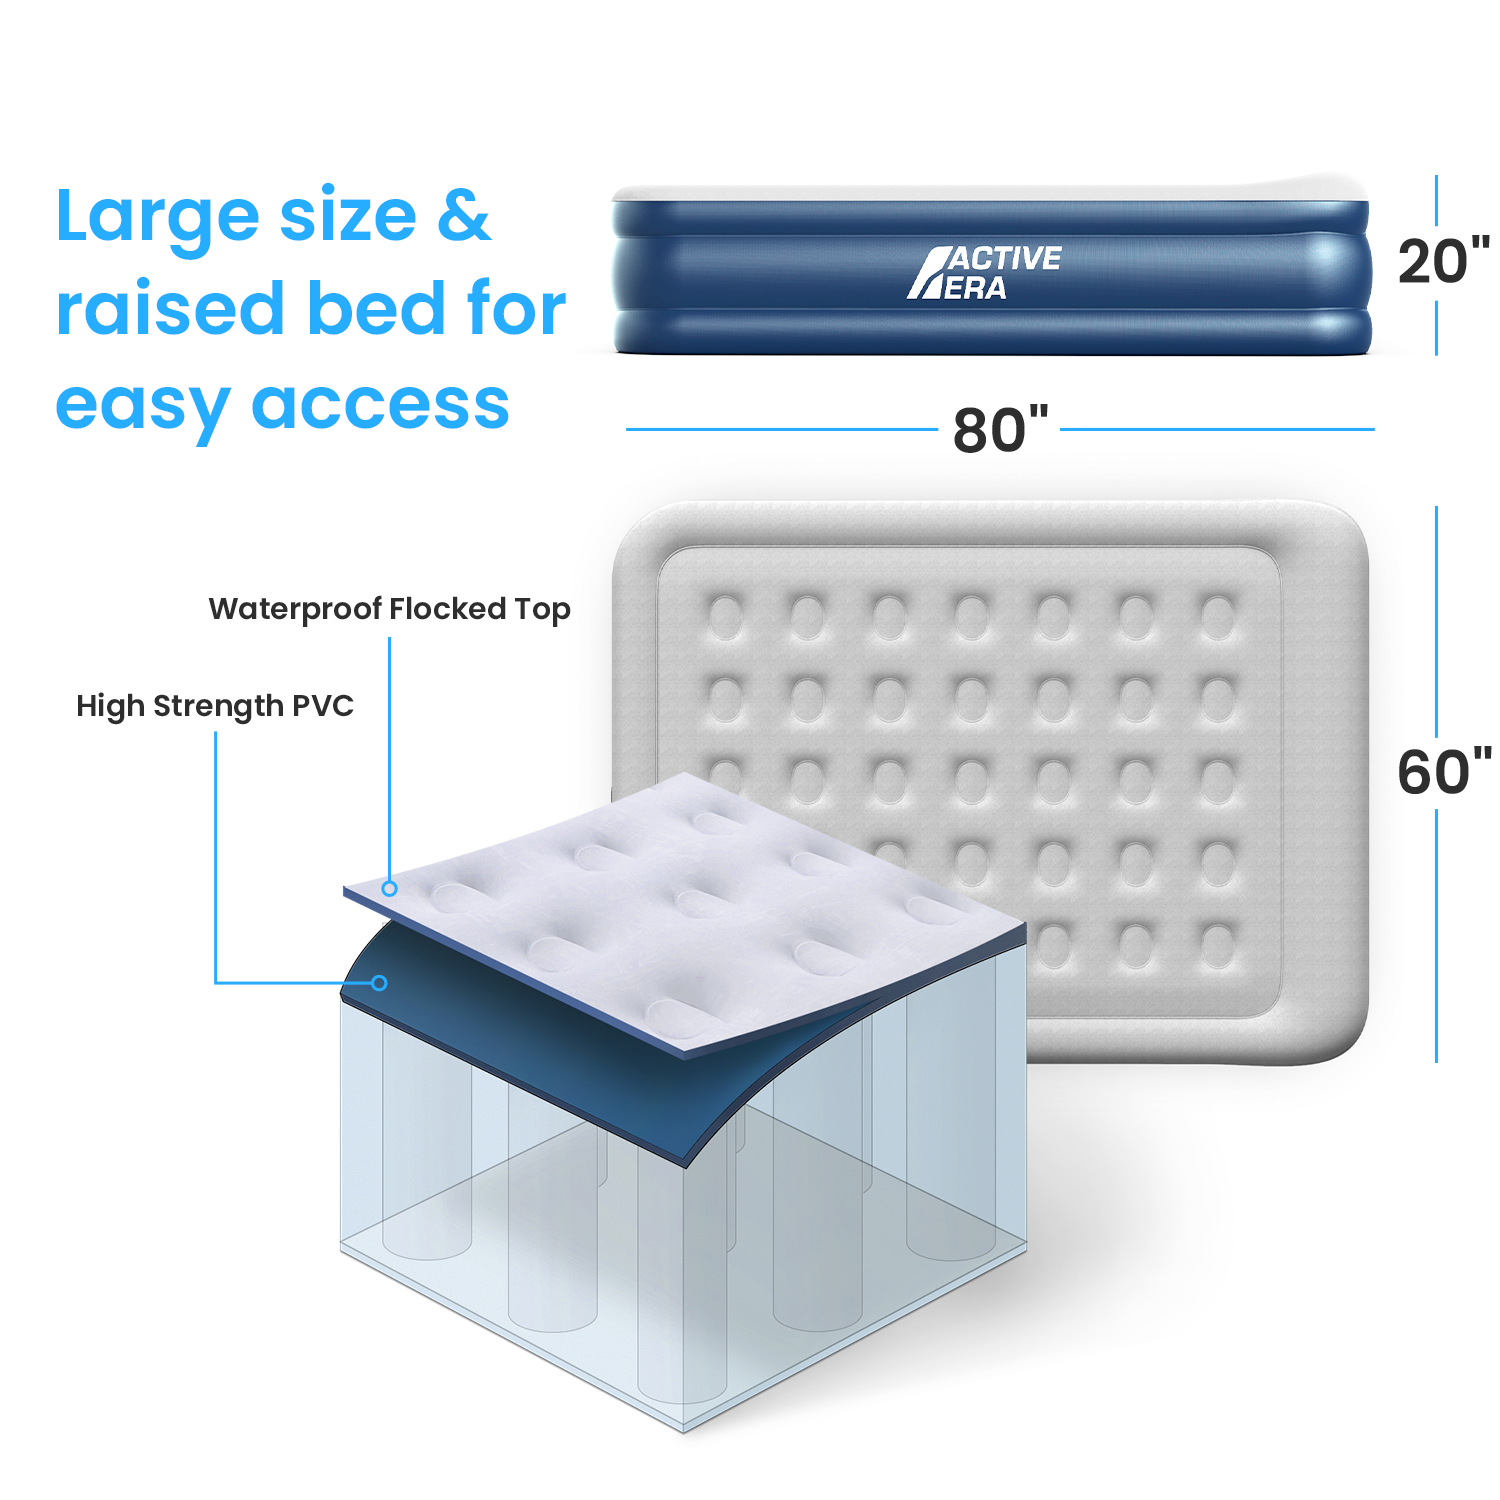 Matelas gonflable grand confort pour grand lit – Gris/Marine